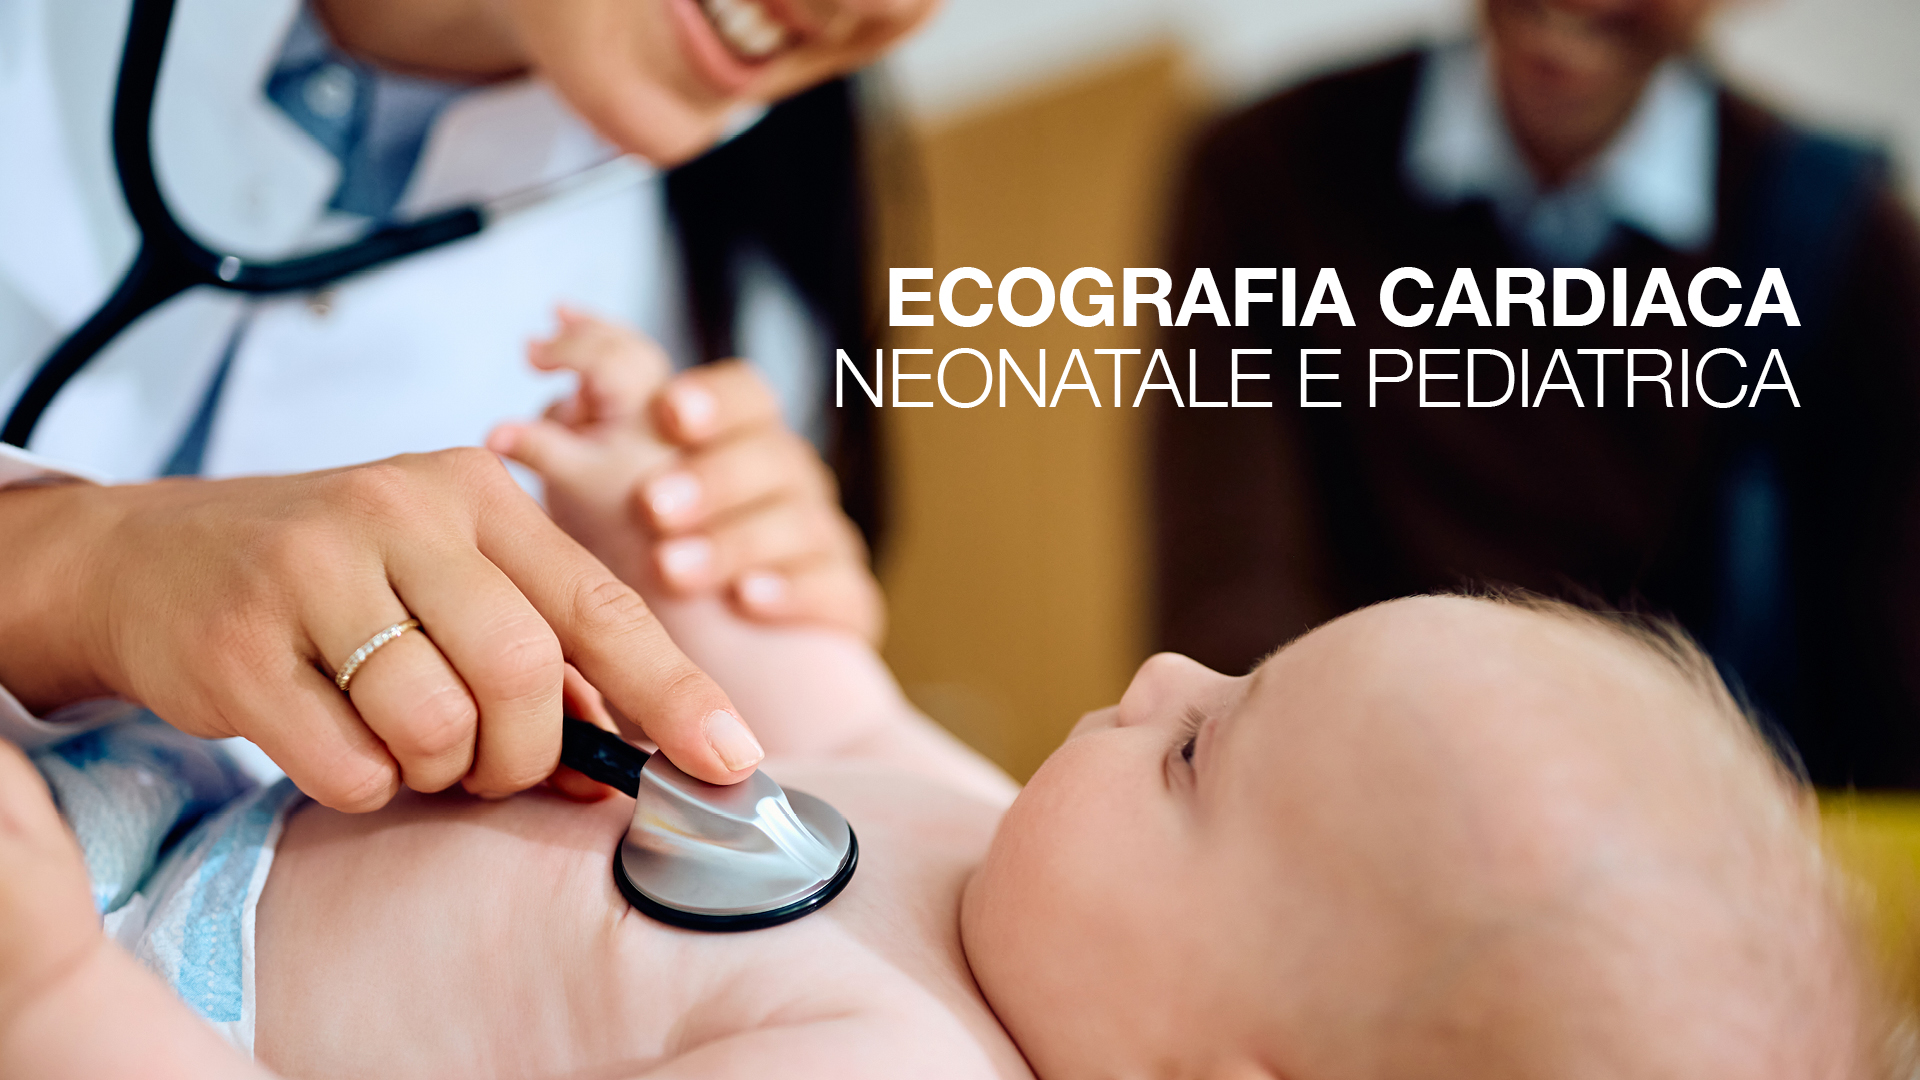 Ecografia Cardiaca Neonatale e Pediatrica: che cos’è e quando viene utilizzata